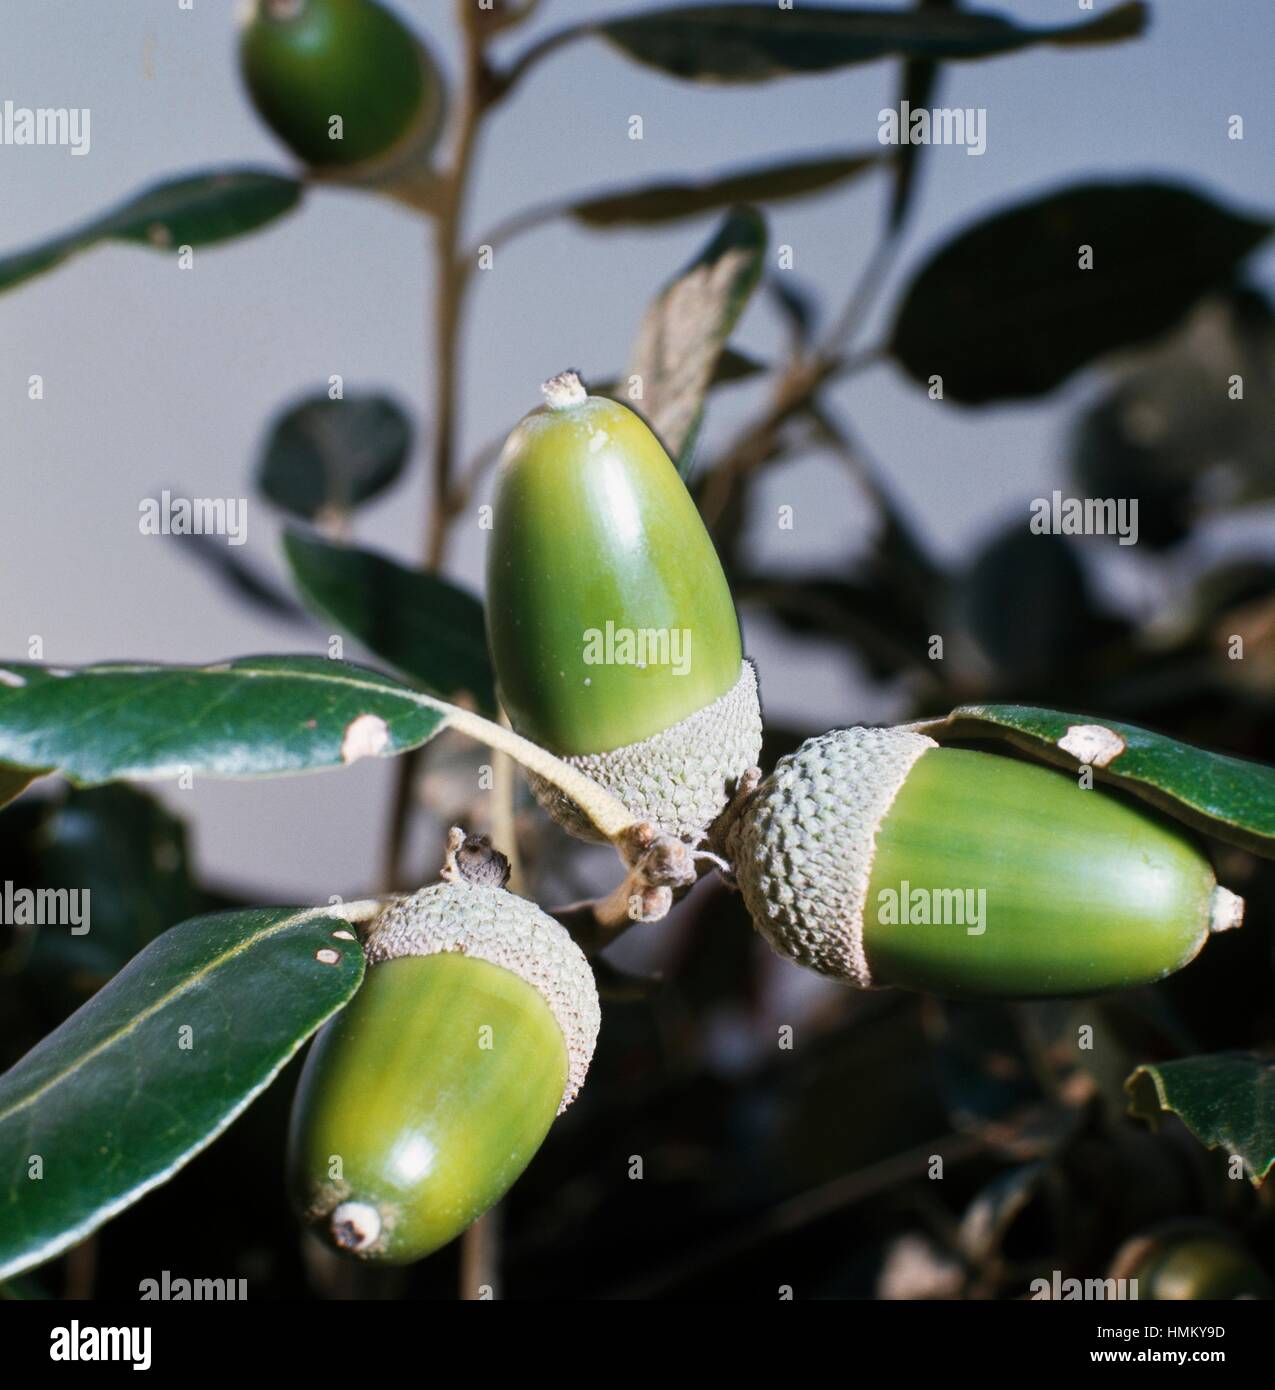 Chêne vert ou des glands de chêne houx (Quercus ilex), Fagaceae. Banque D'Images